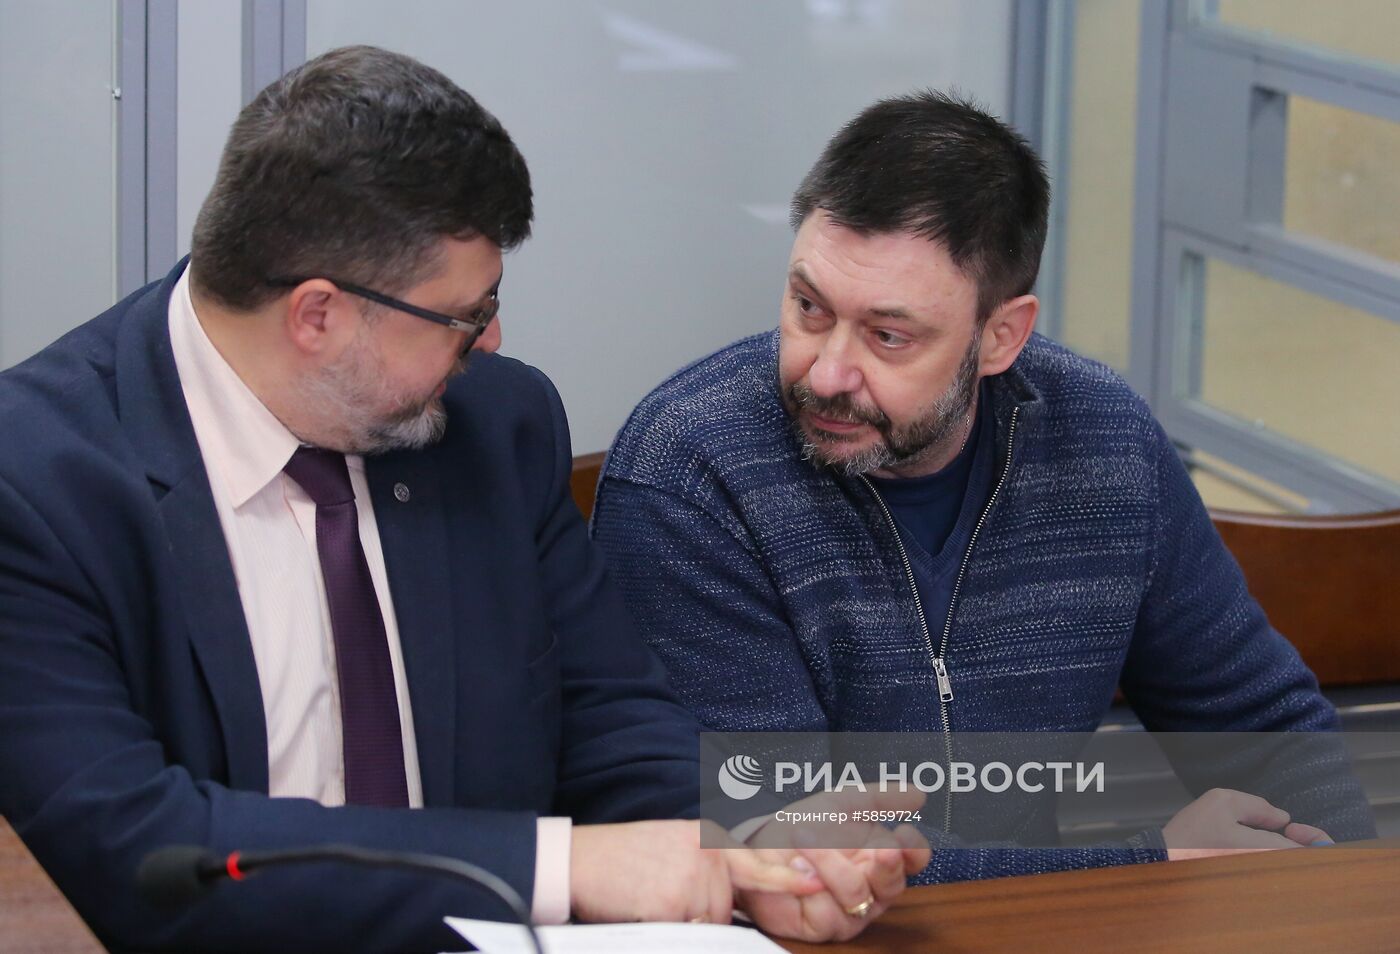 Заседание по делу журналиста К. Вышинского в Киеве